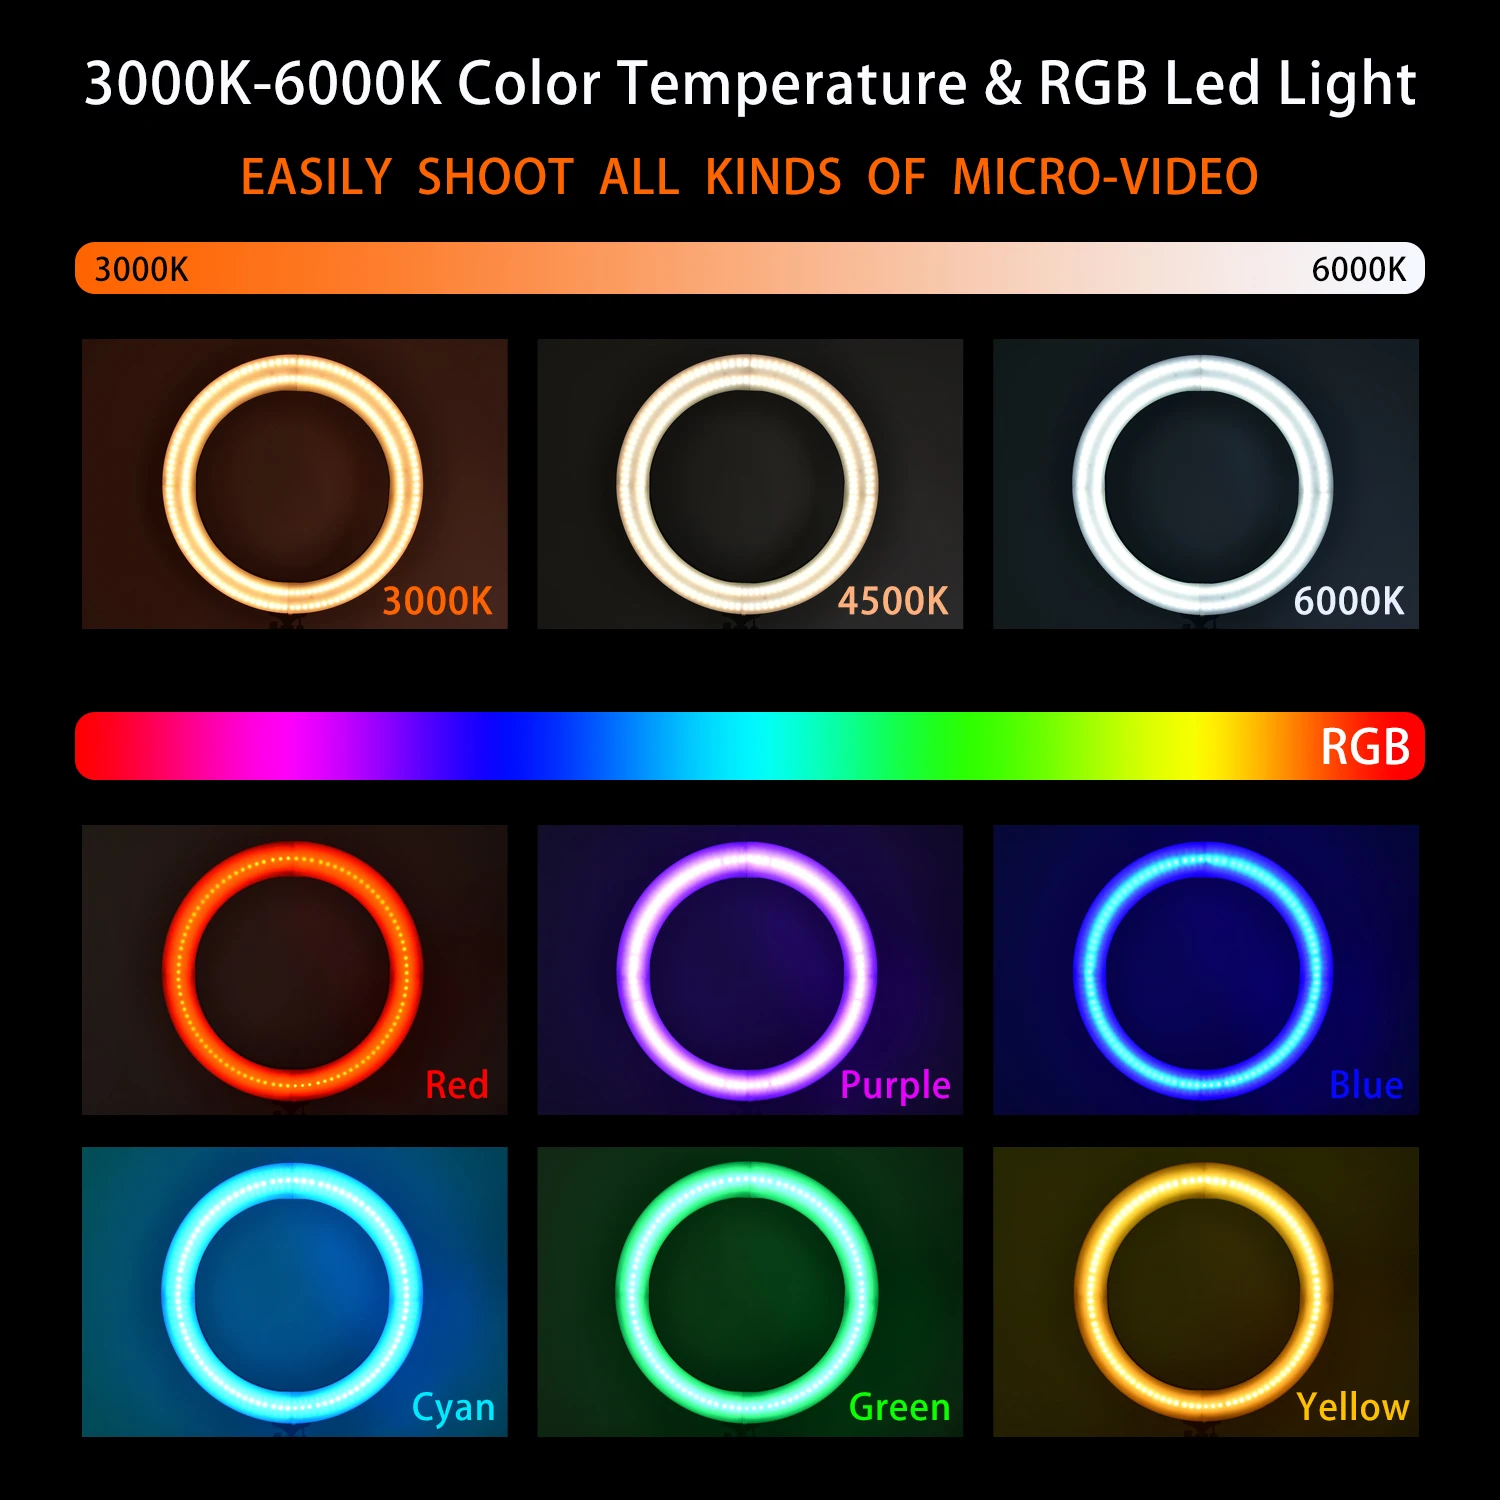 Fosoto 18 дюймовый фотографический светильник RGB кольцевая лампа 3000-6000K светодиодный видео светильник с триподом пульт дистанционного управления для камеры телефона макияж Youtube